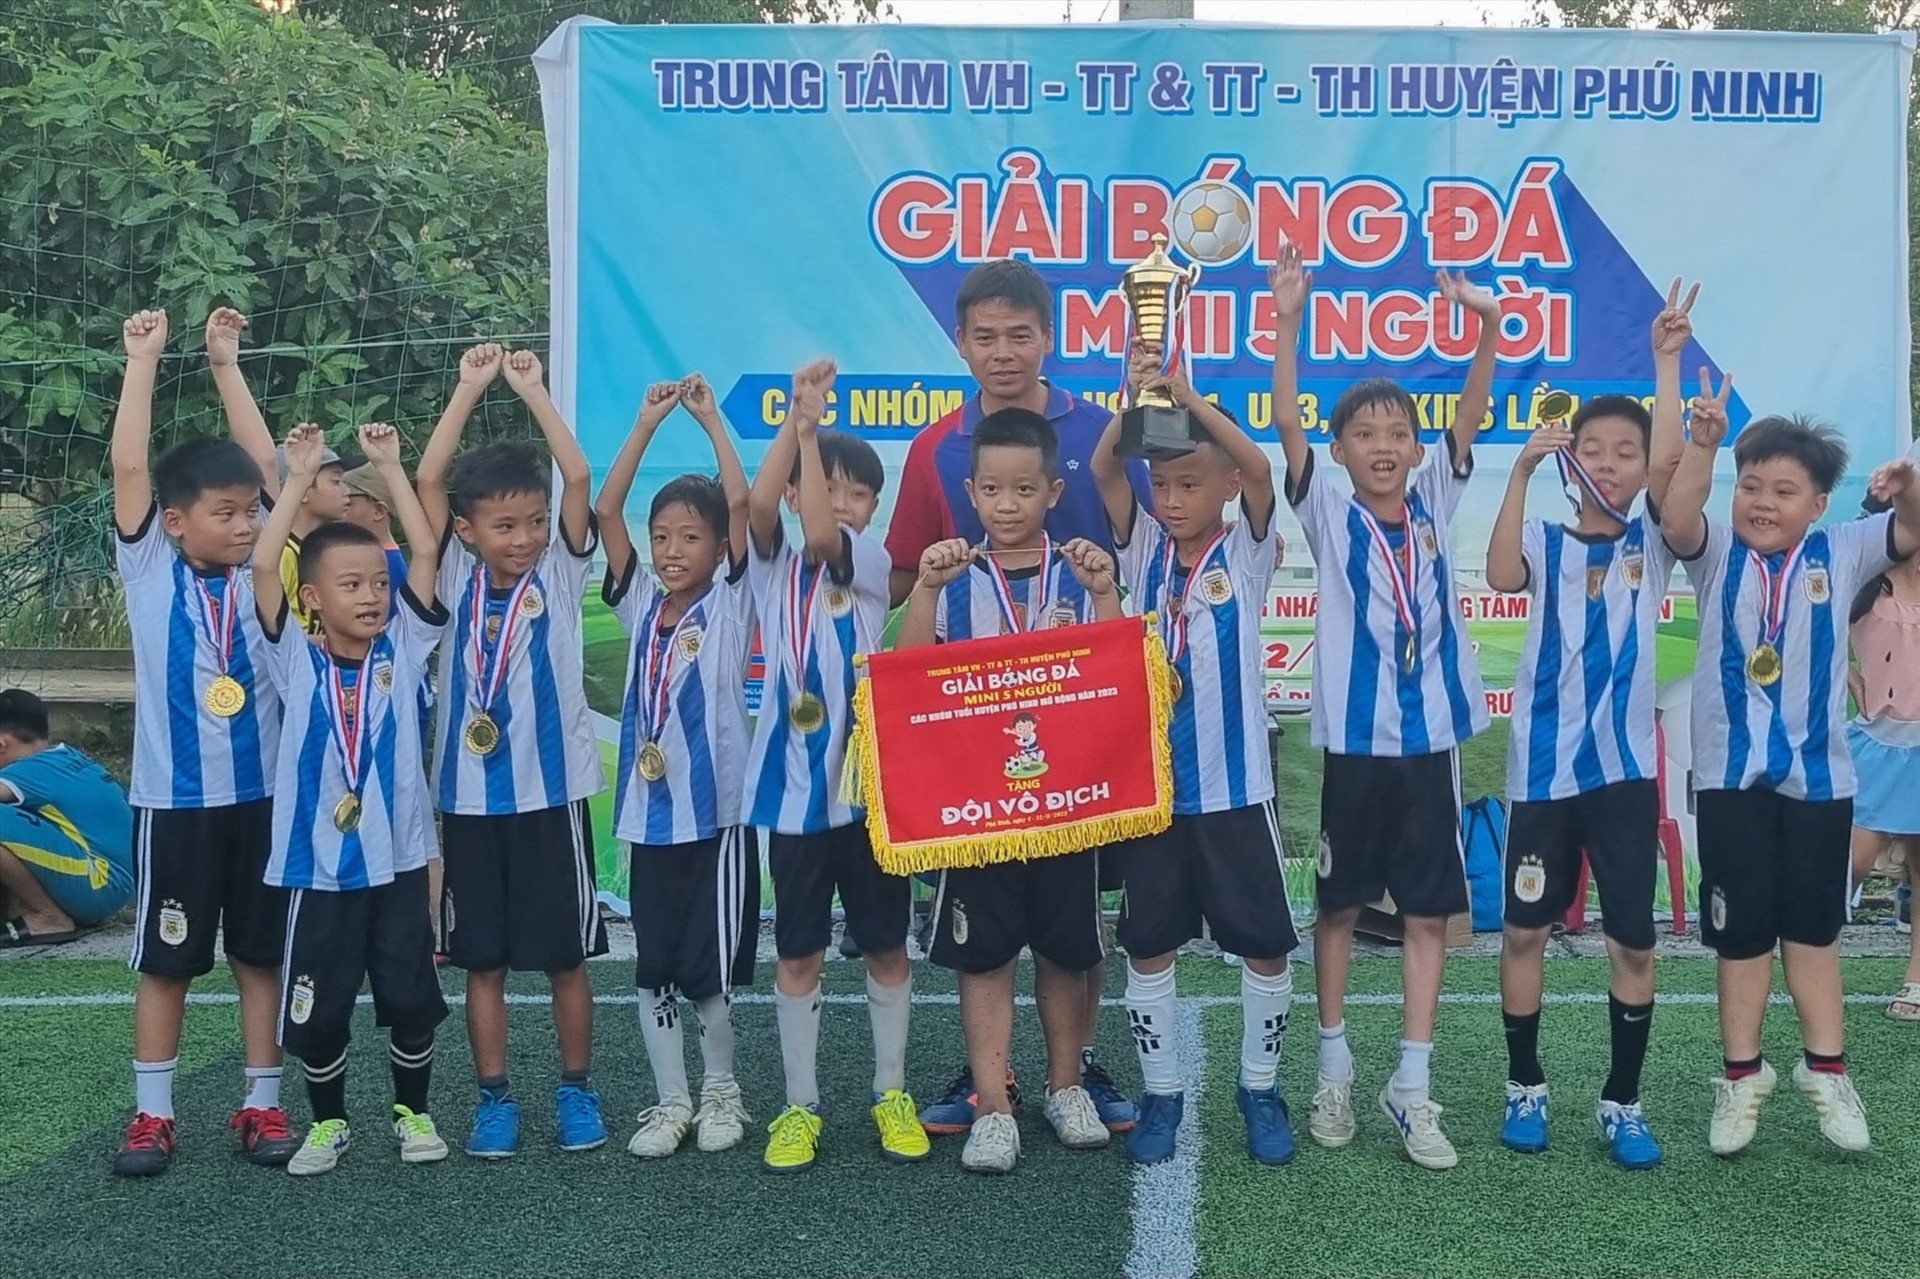 Niềm vui của đội Tam Phước khi đoạt chức vô địch nhóm tuổi U9. Ảnh: C.N